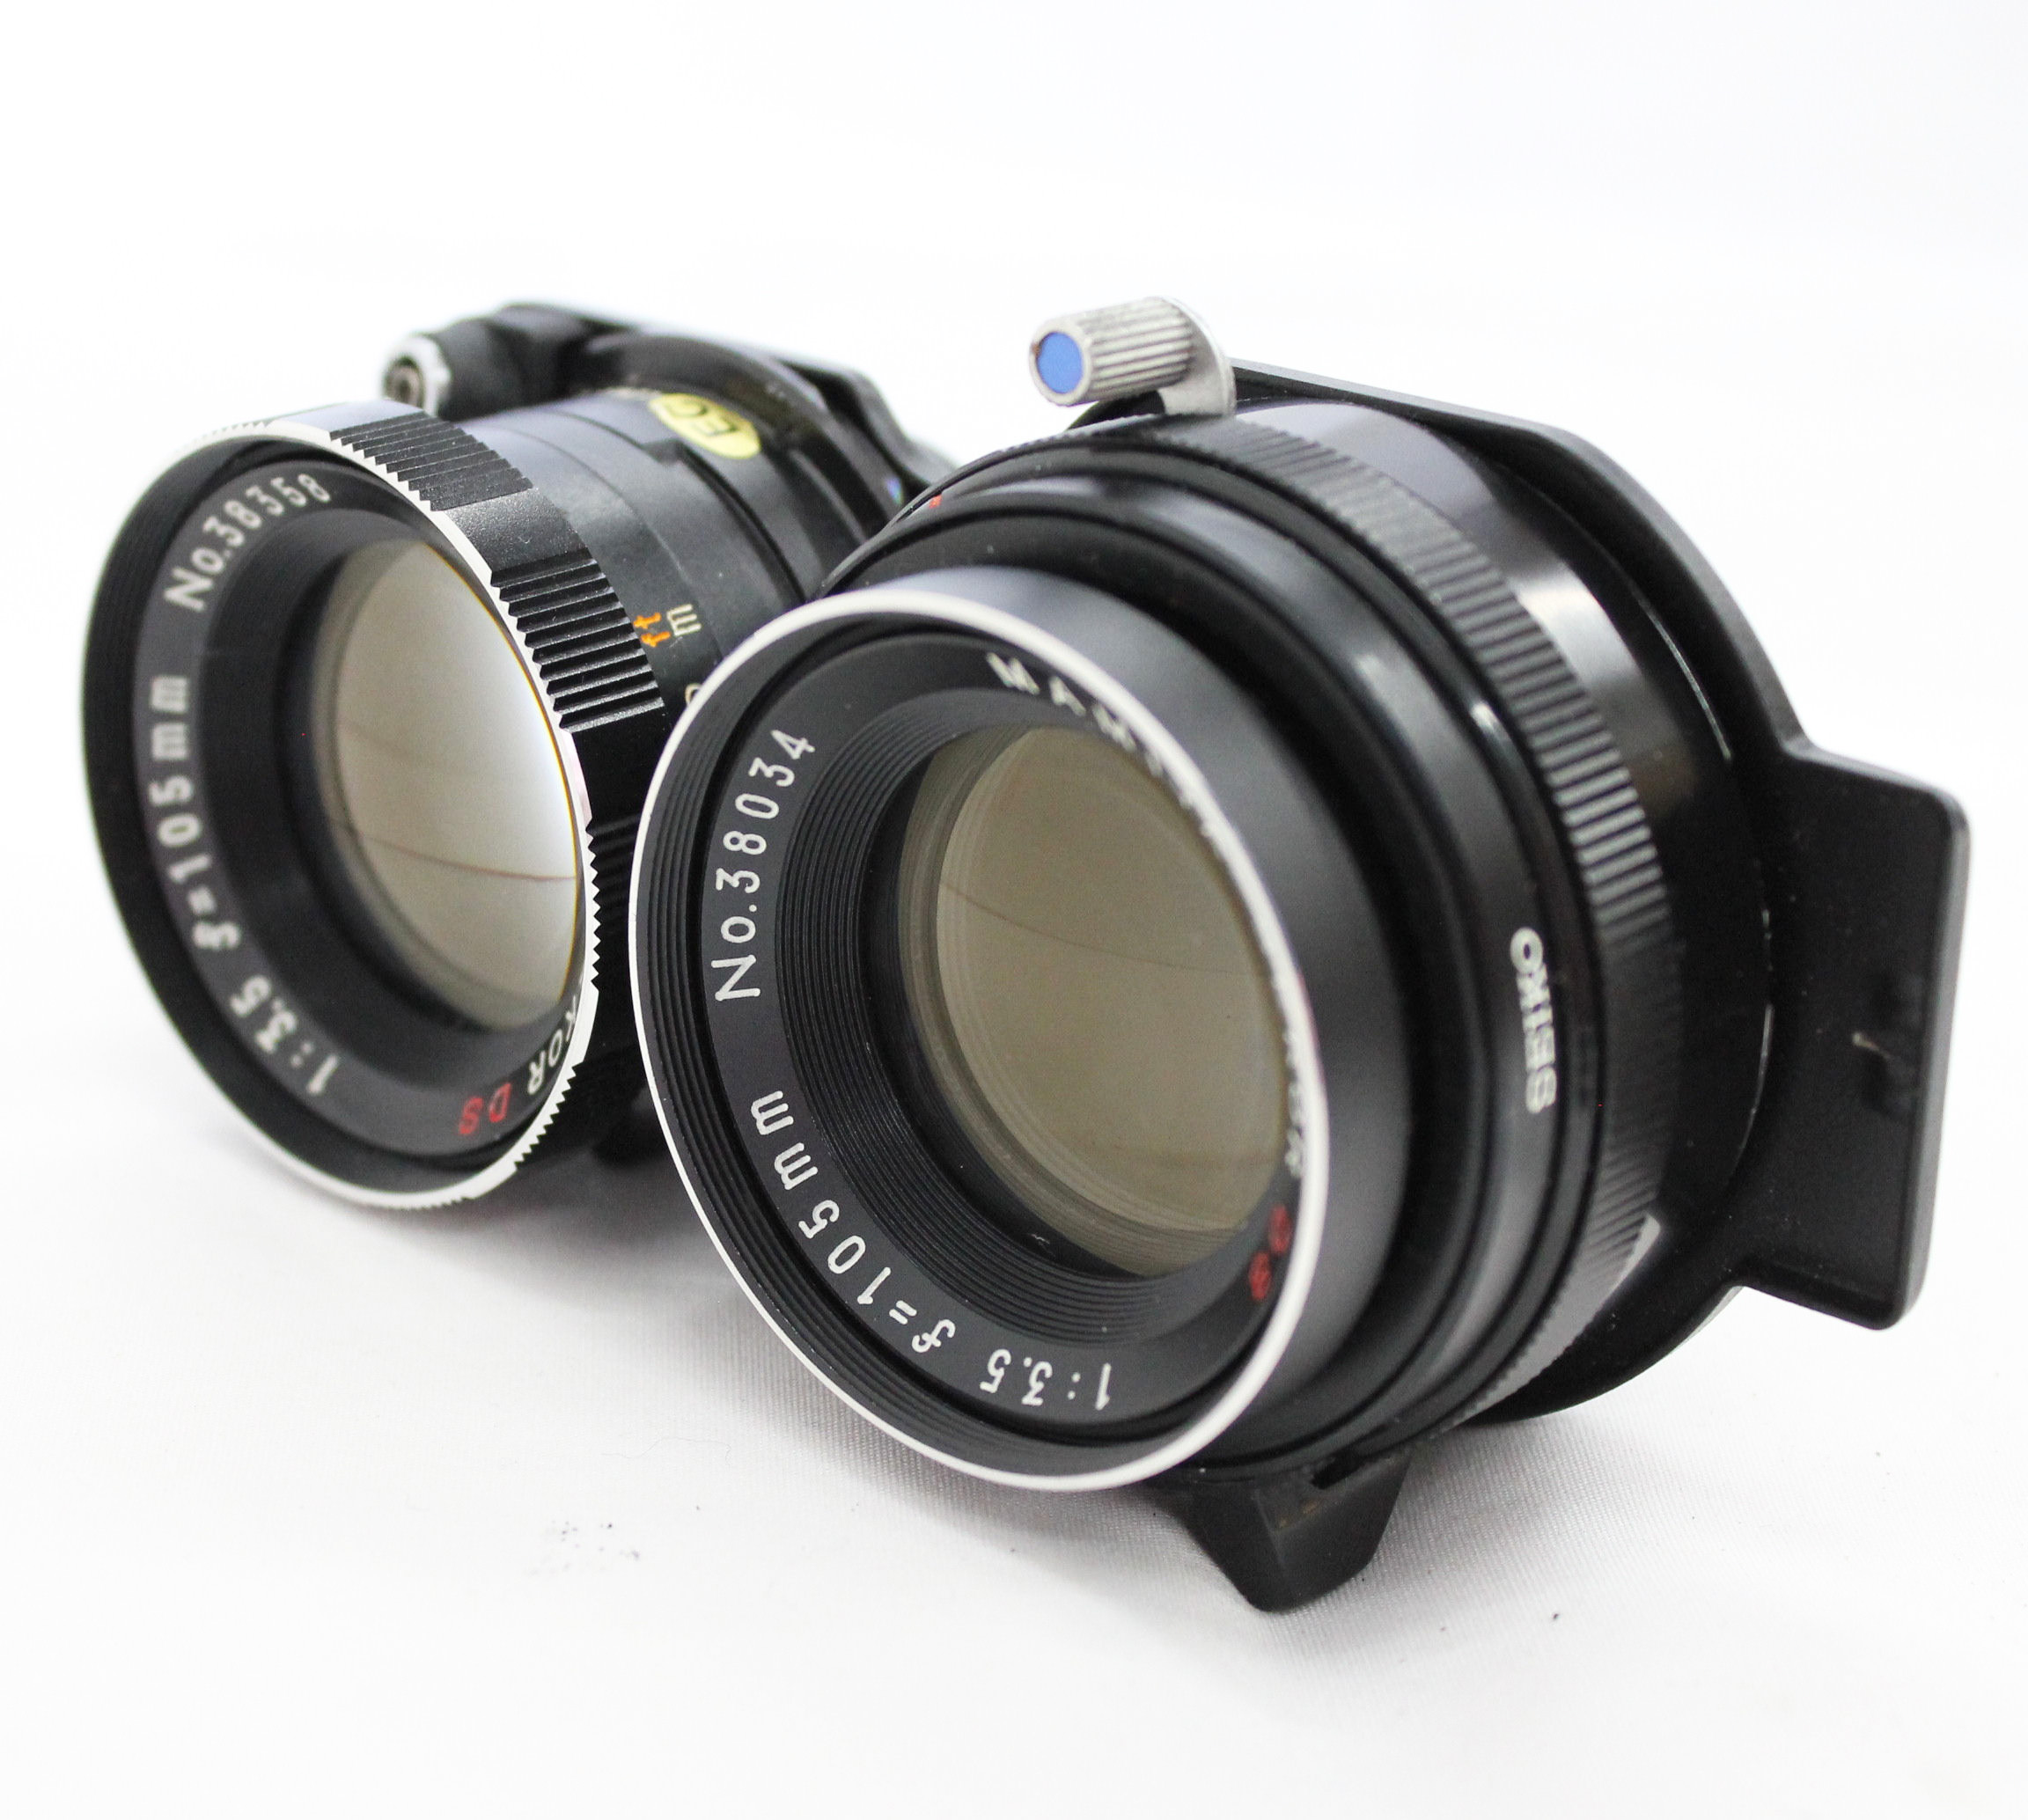  Mamiya C330 Professional Camera with Mamiya-Sekor DS 105mm F3.5 Blue Dot Lens from Japan Photo 17